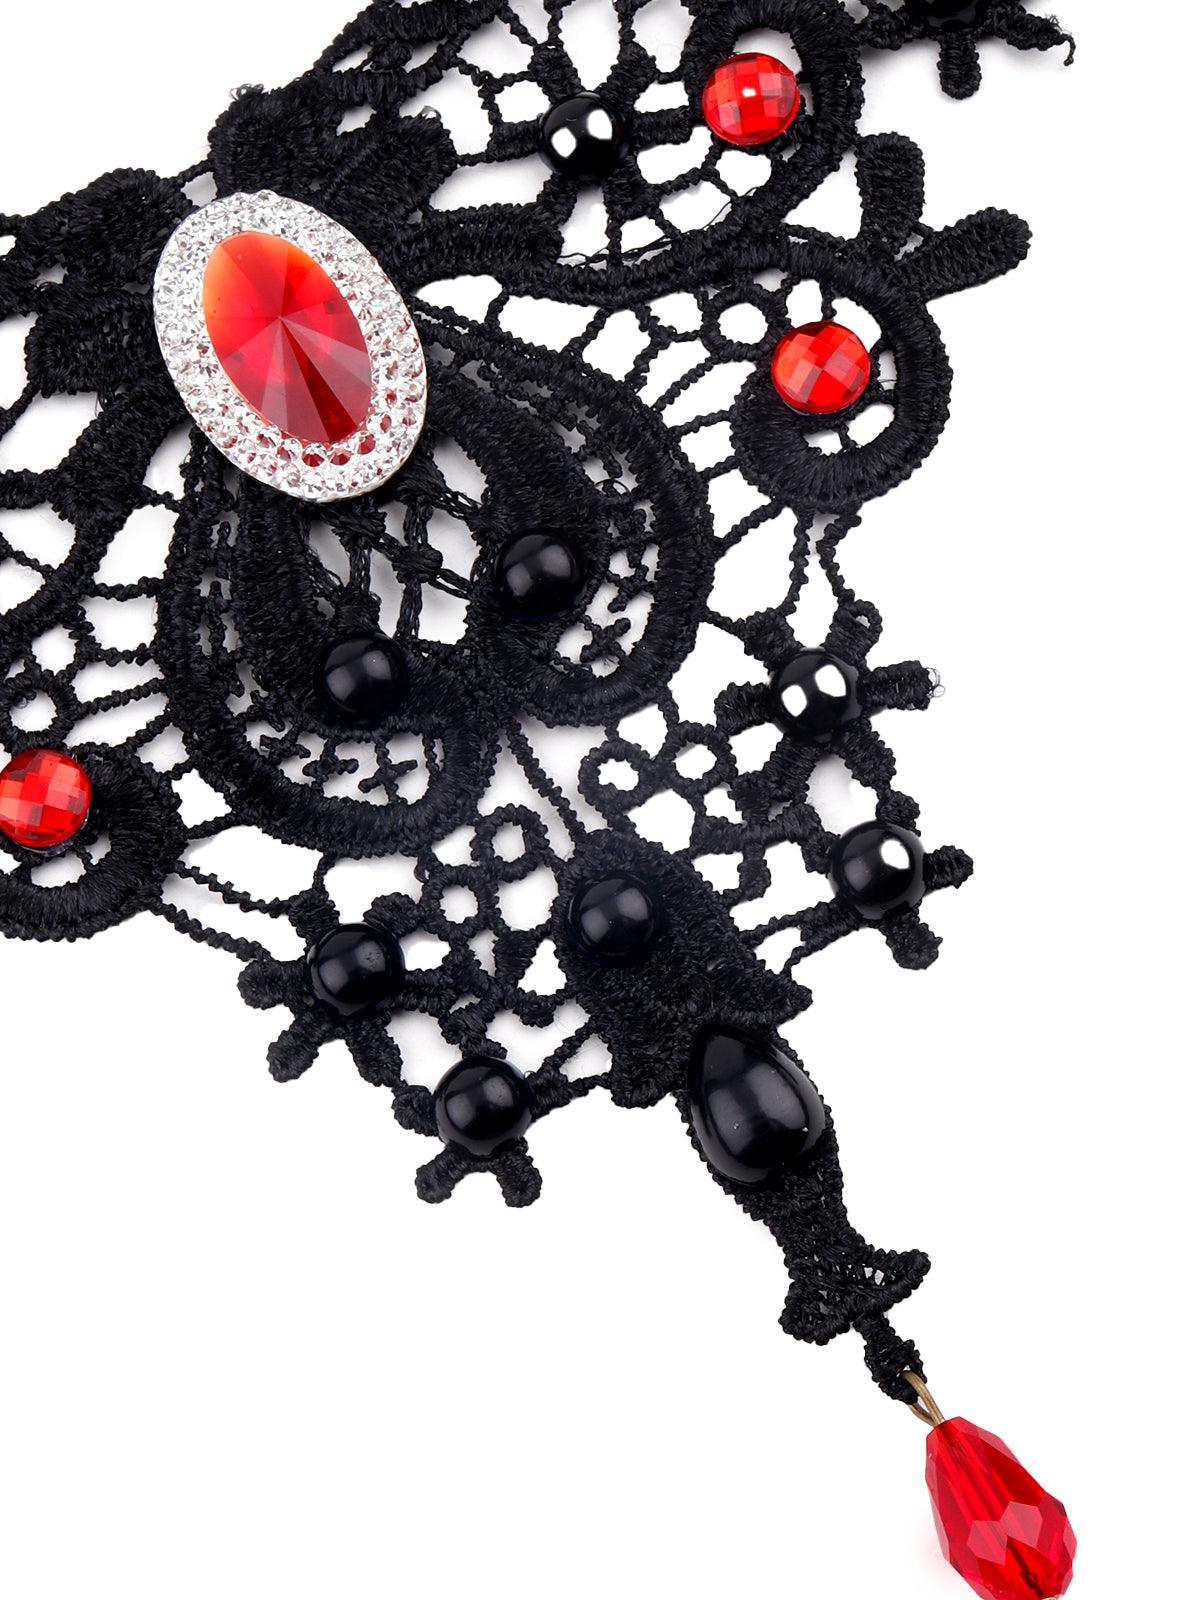 Gorgeous black lace embellished necklace - Odette